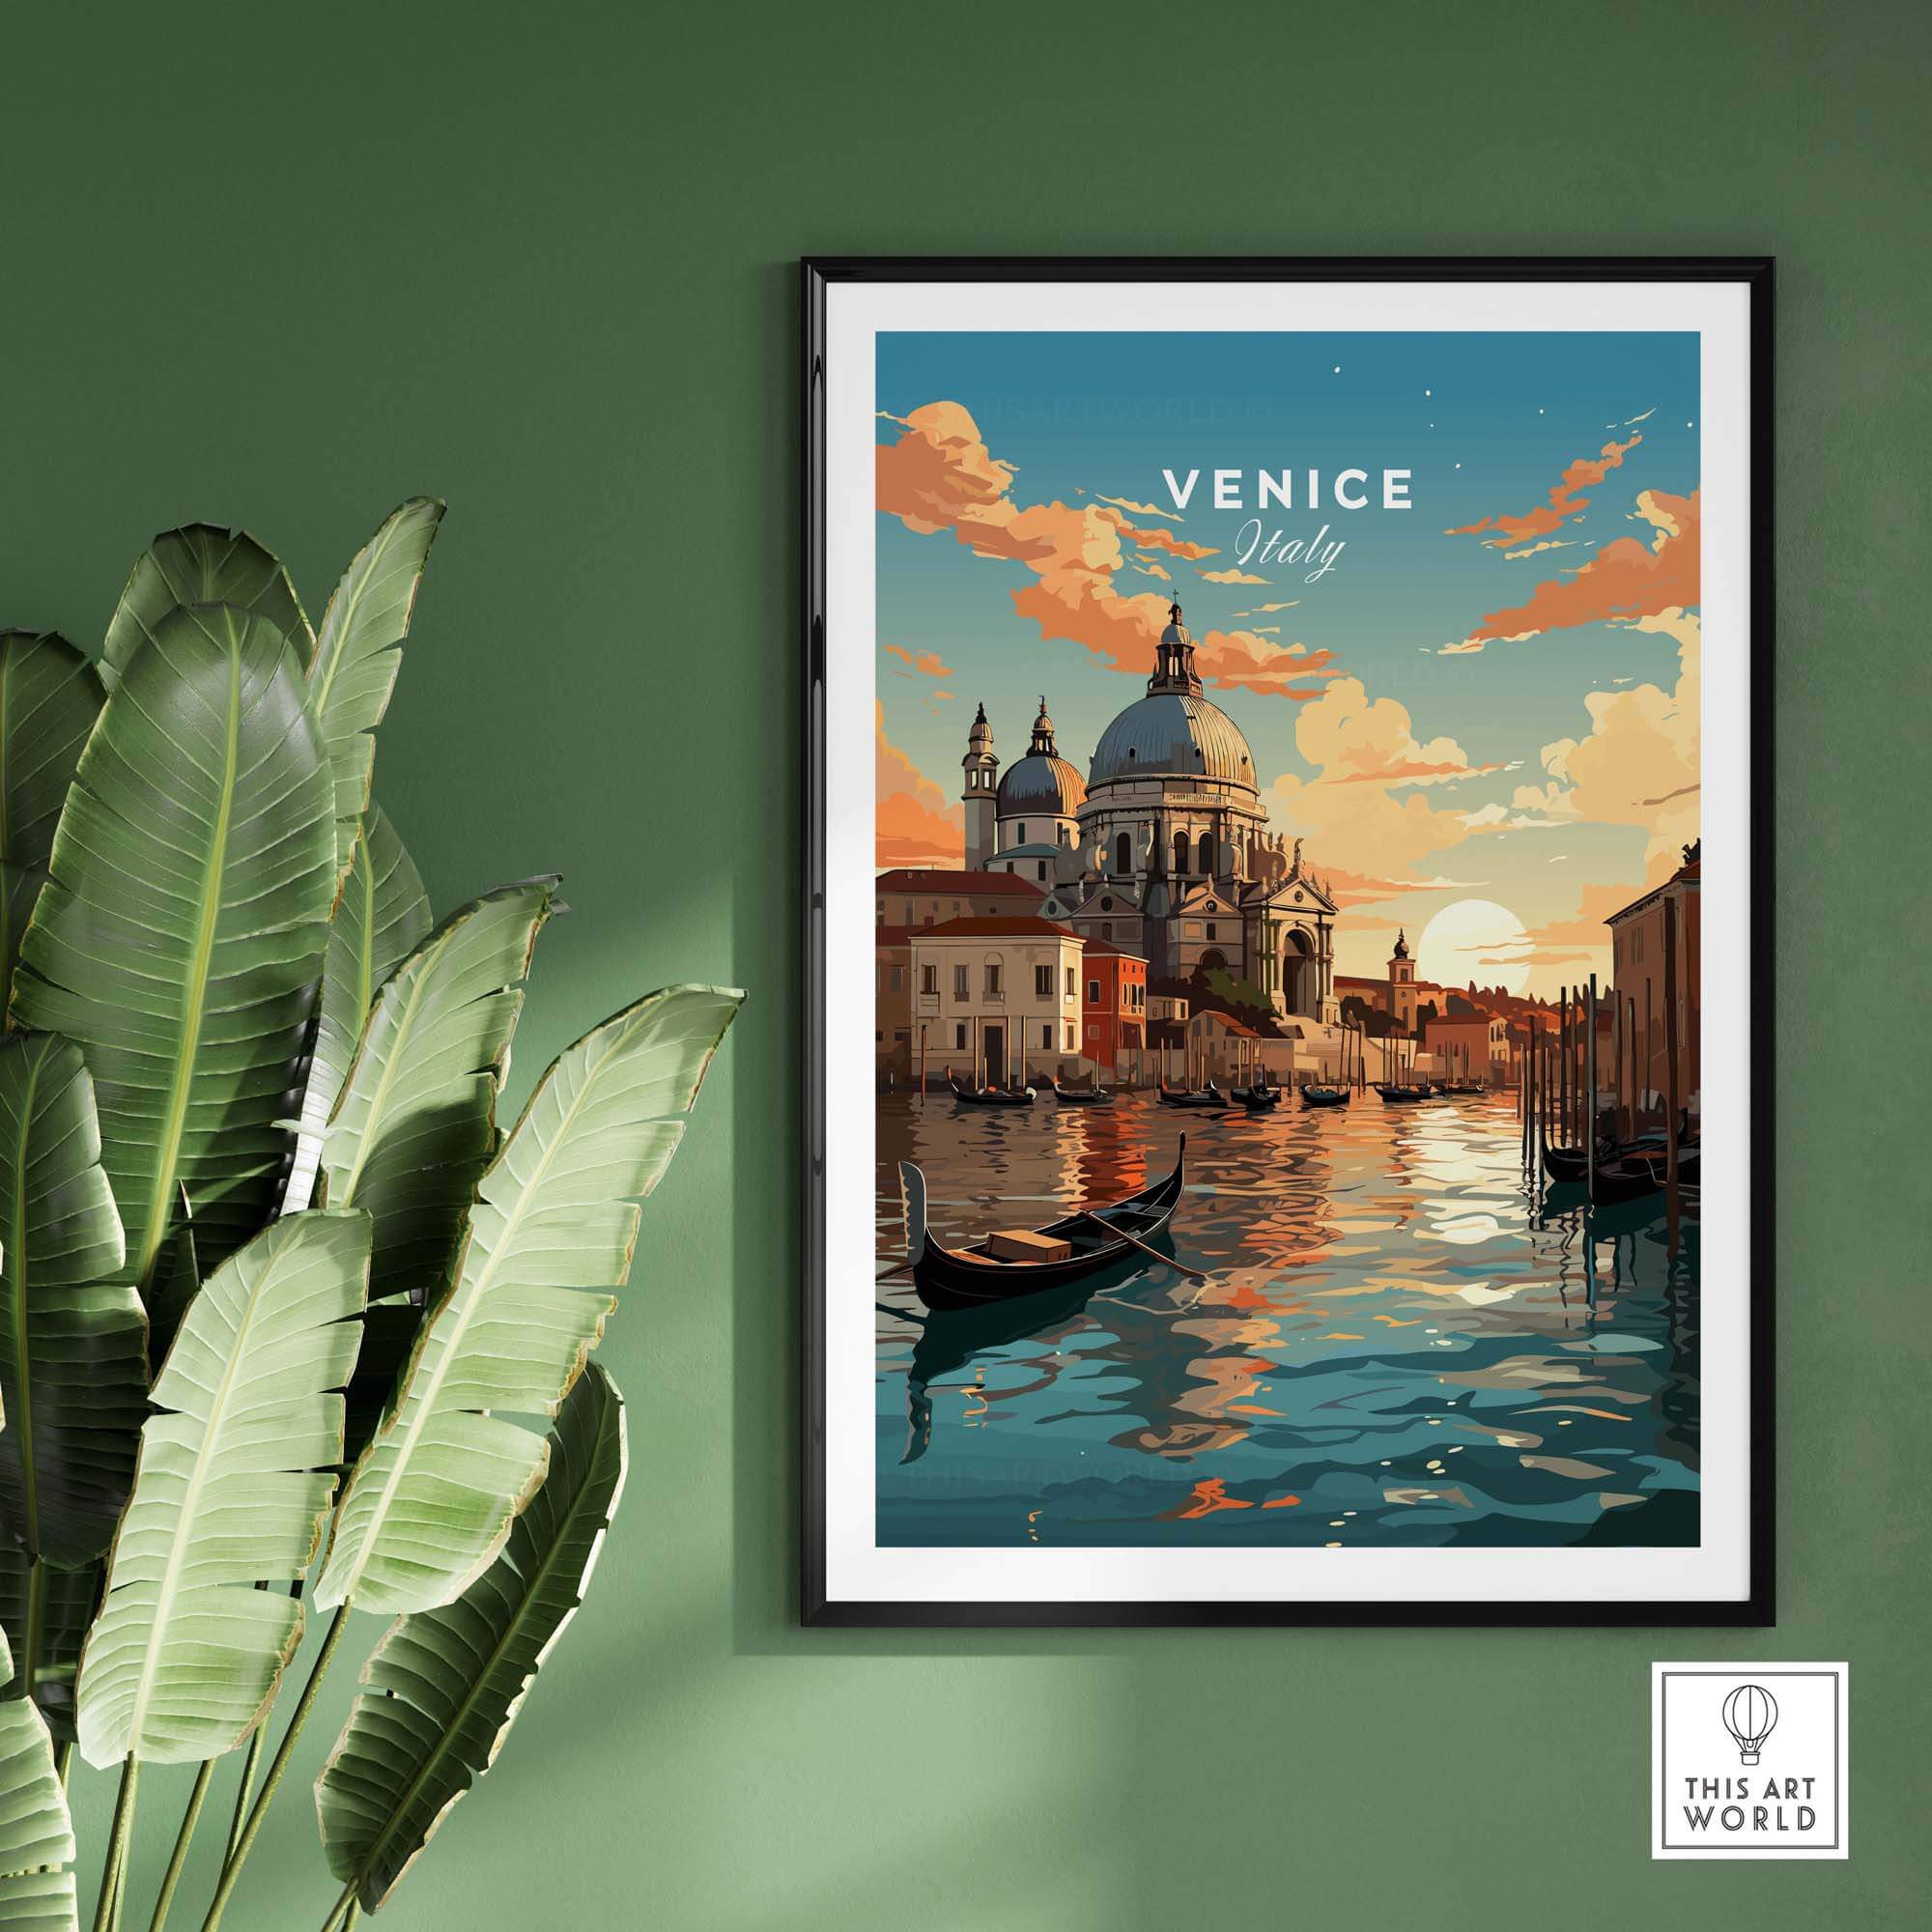 Venice Print